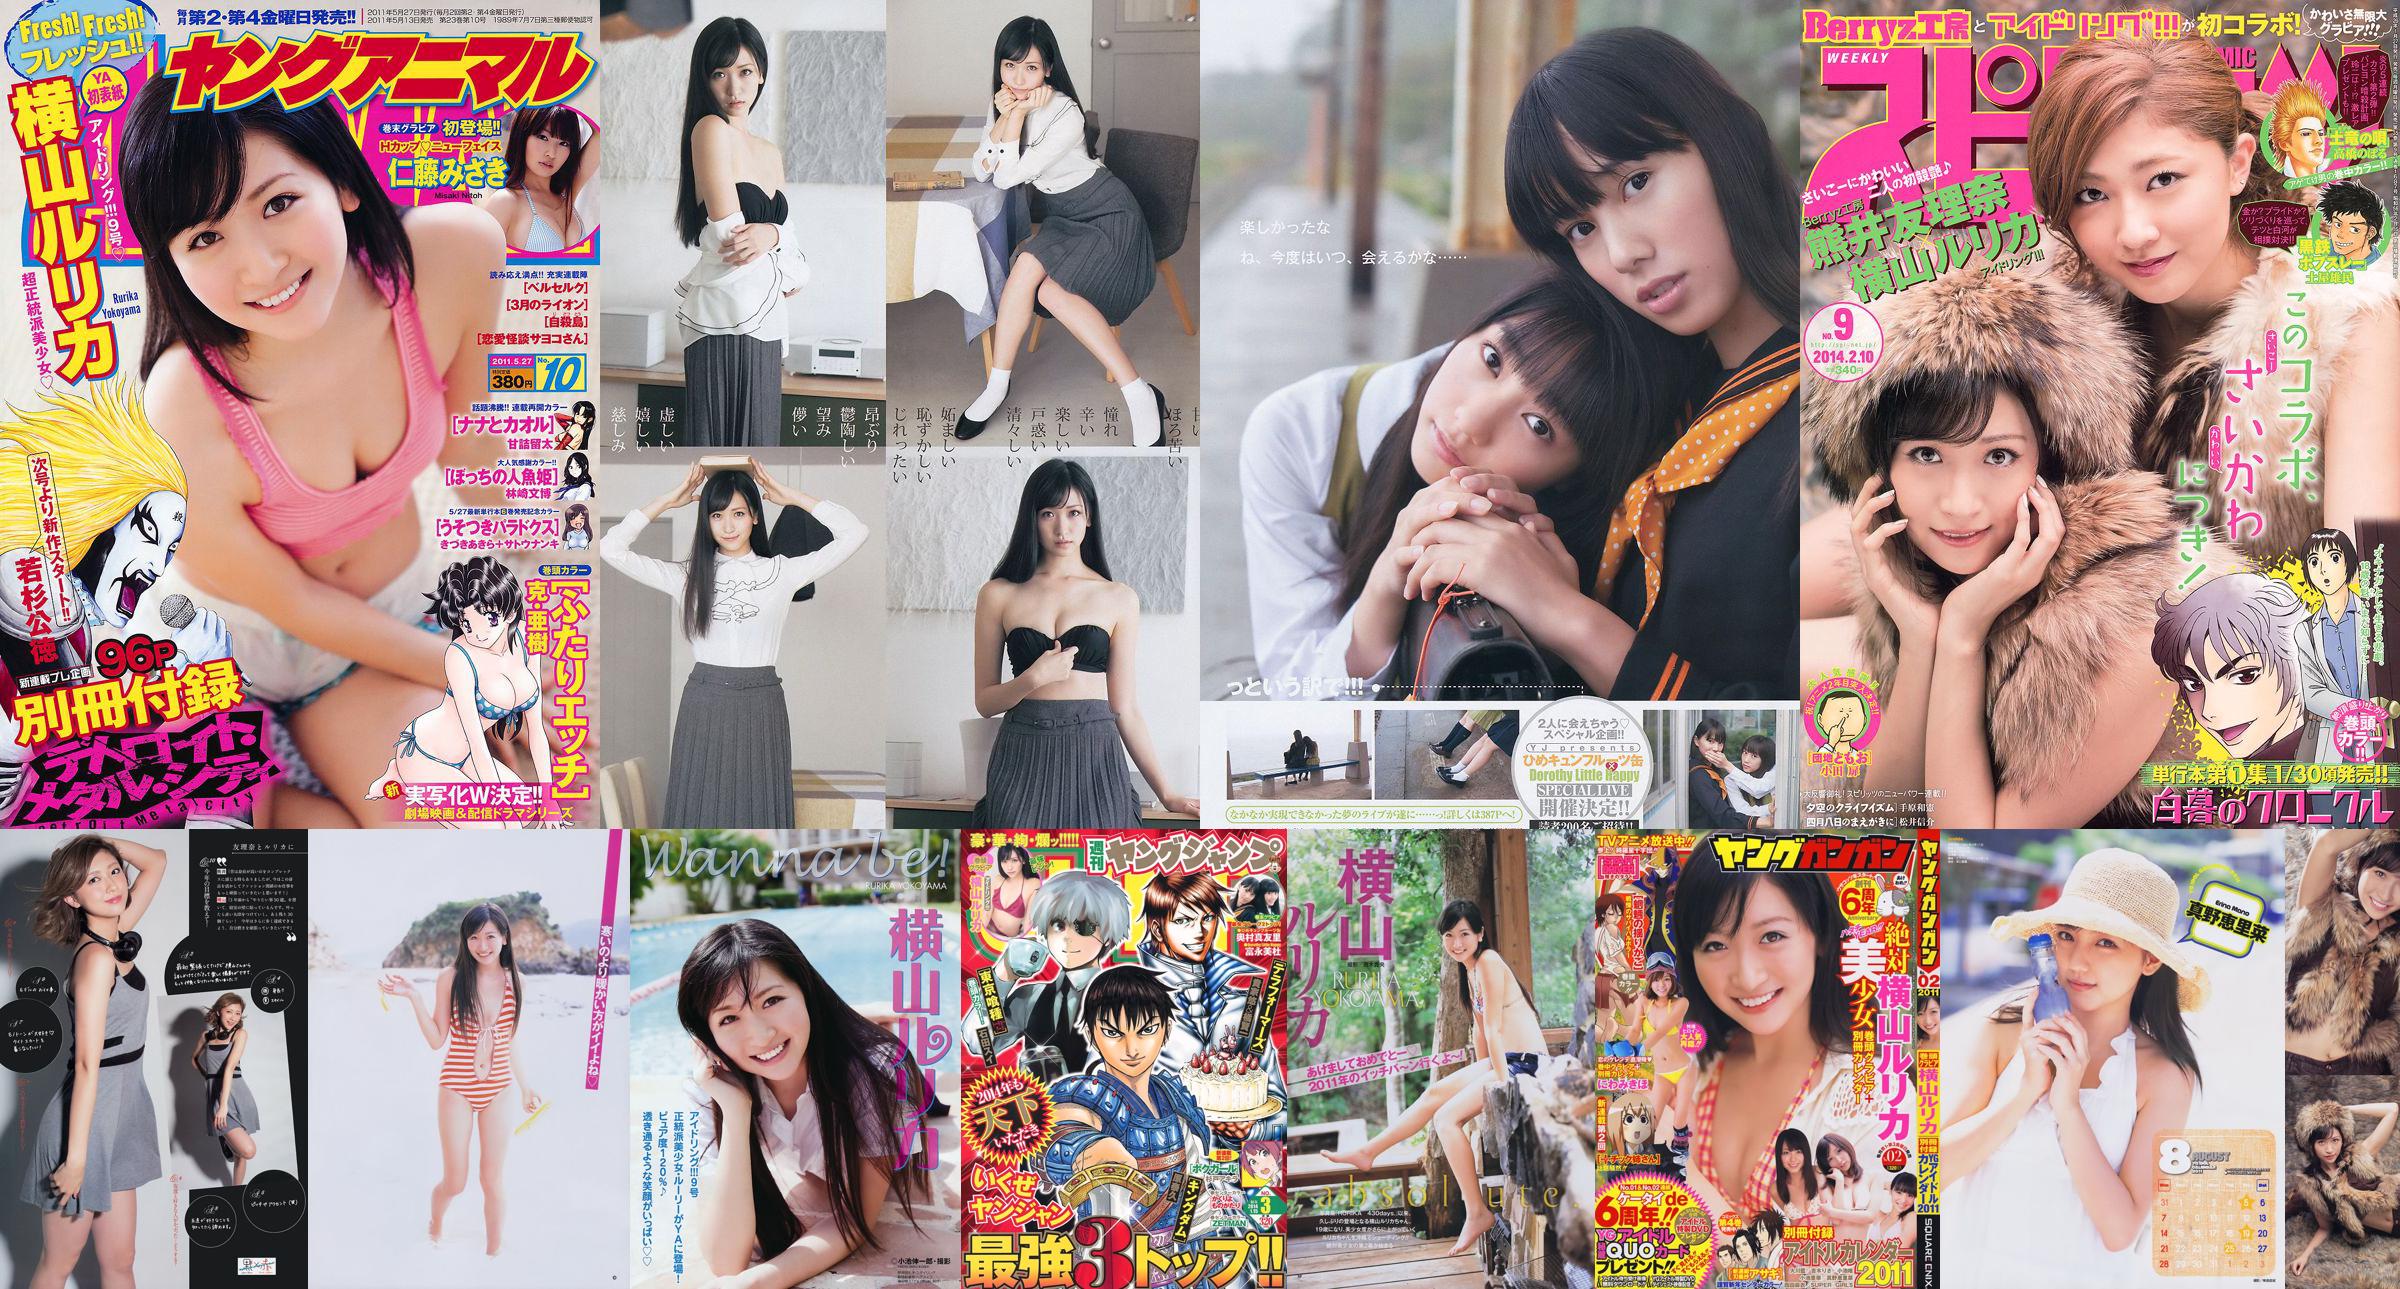 Lurika Yokoyama Mayuri Okumura Mimori Tominaga [每週的青年跳] 2014 No.03攝影森 No.17fd3c 第5頁